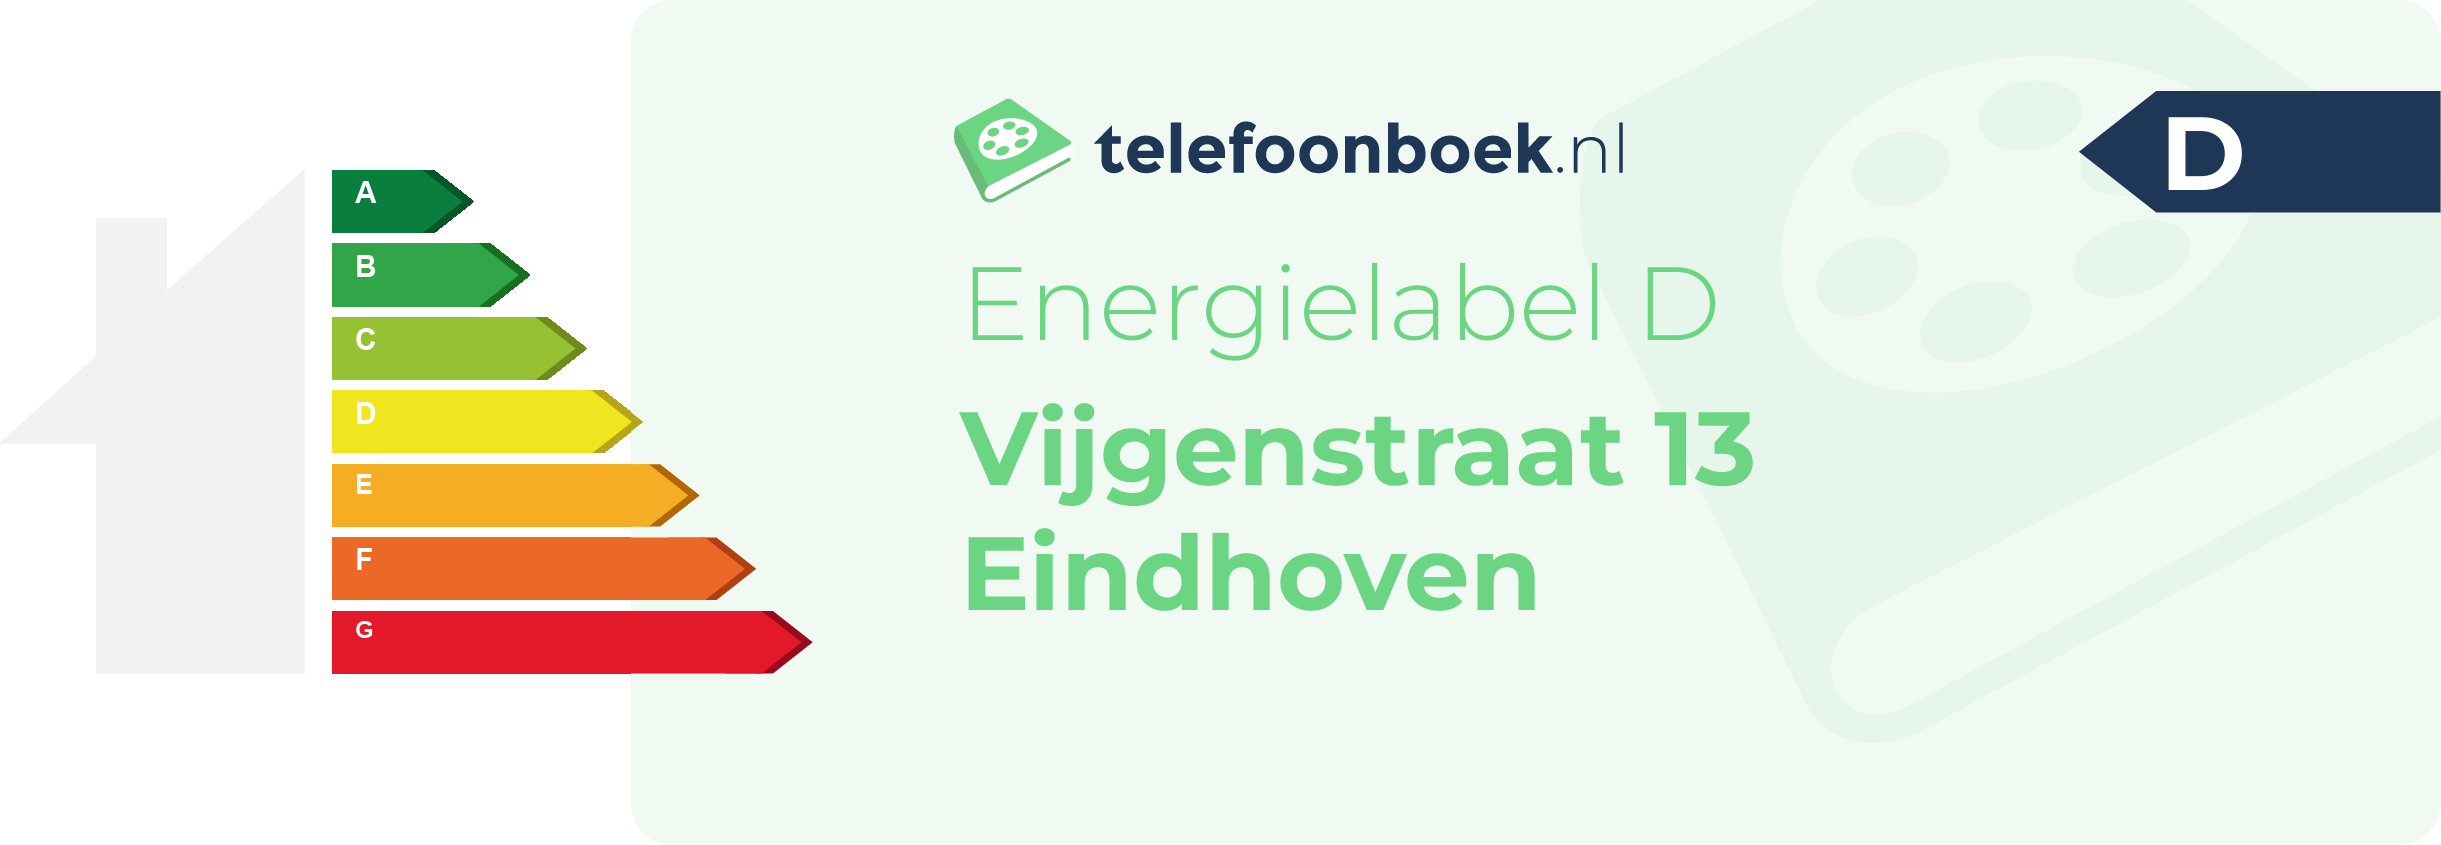 Energielabel Vijgenstraat 13 Eindhoven